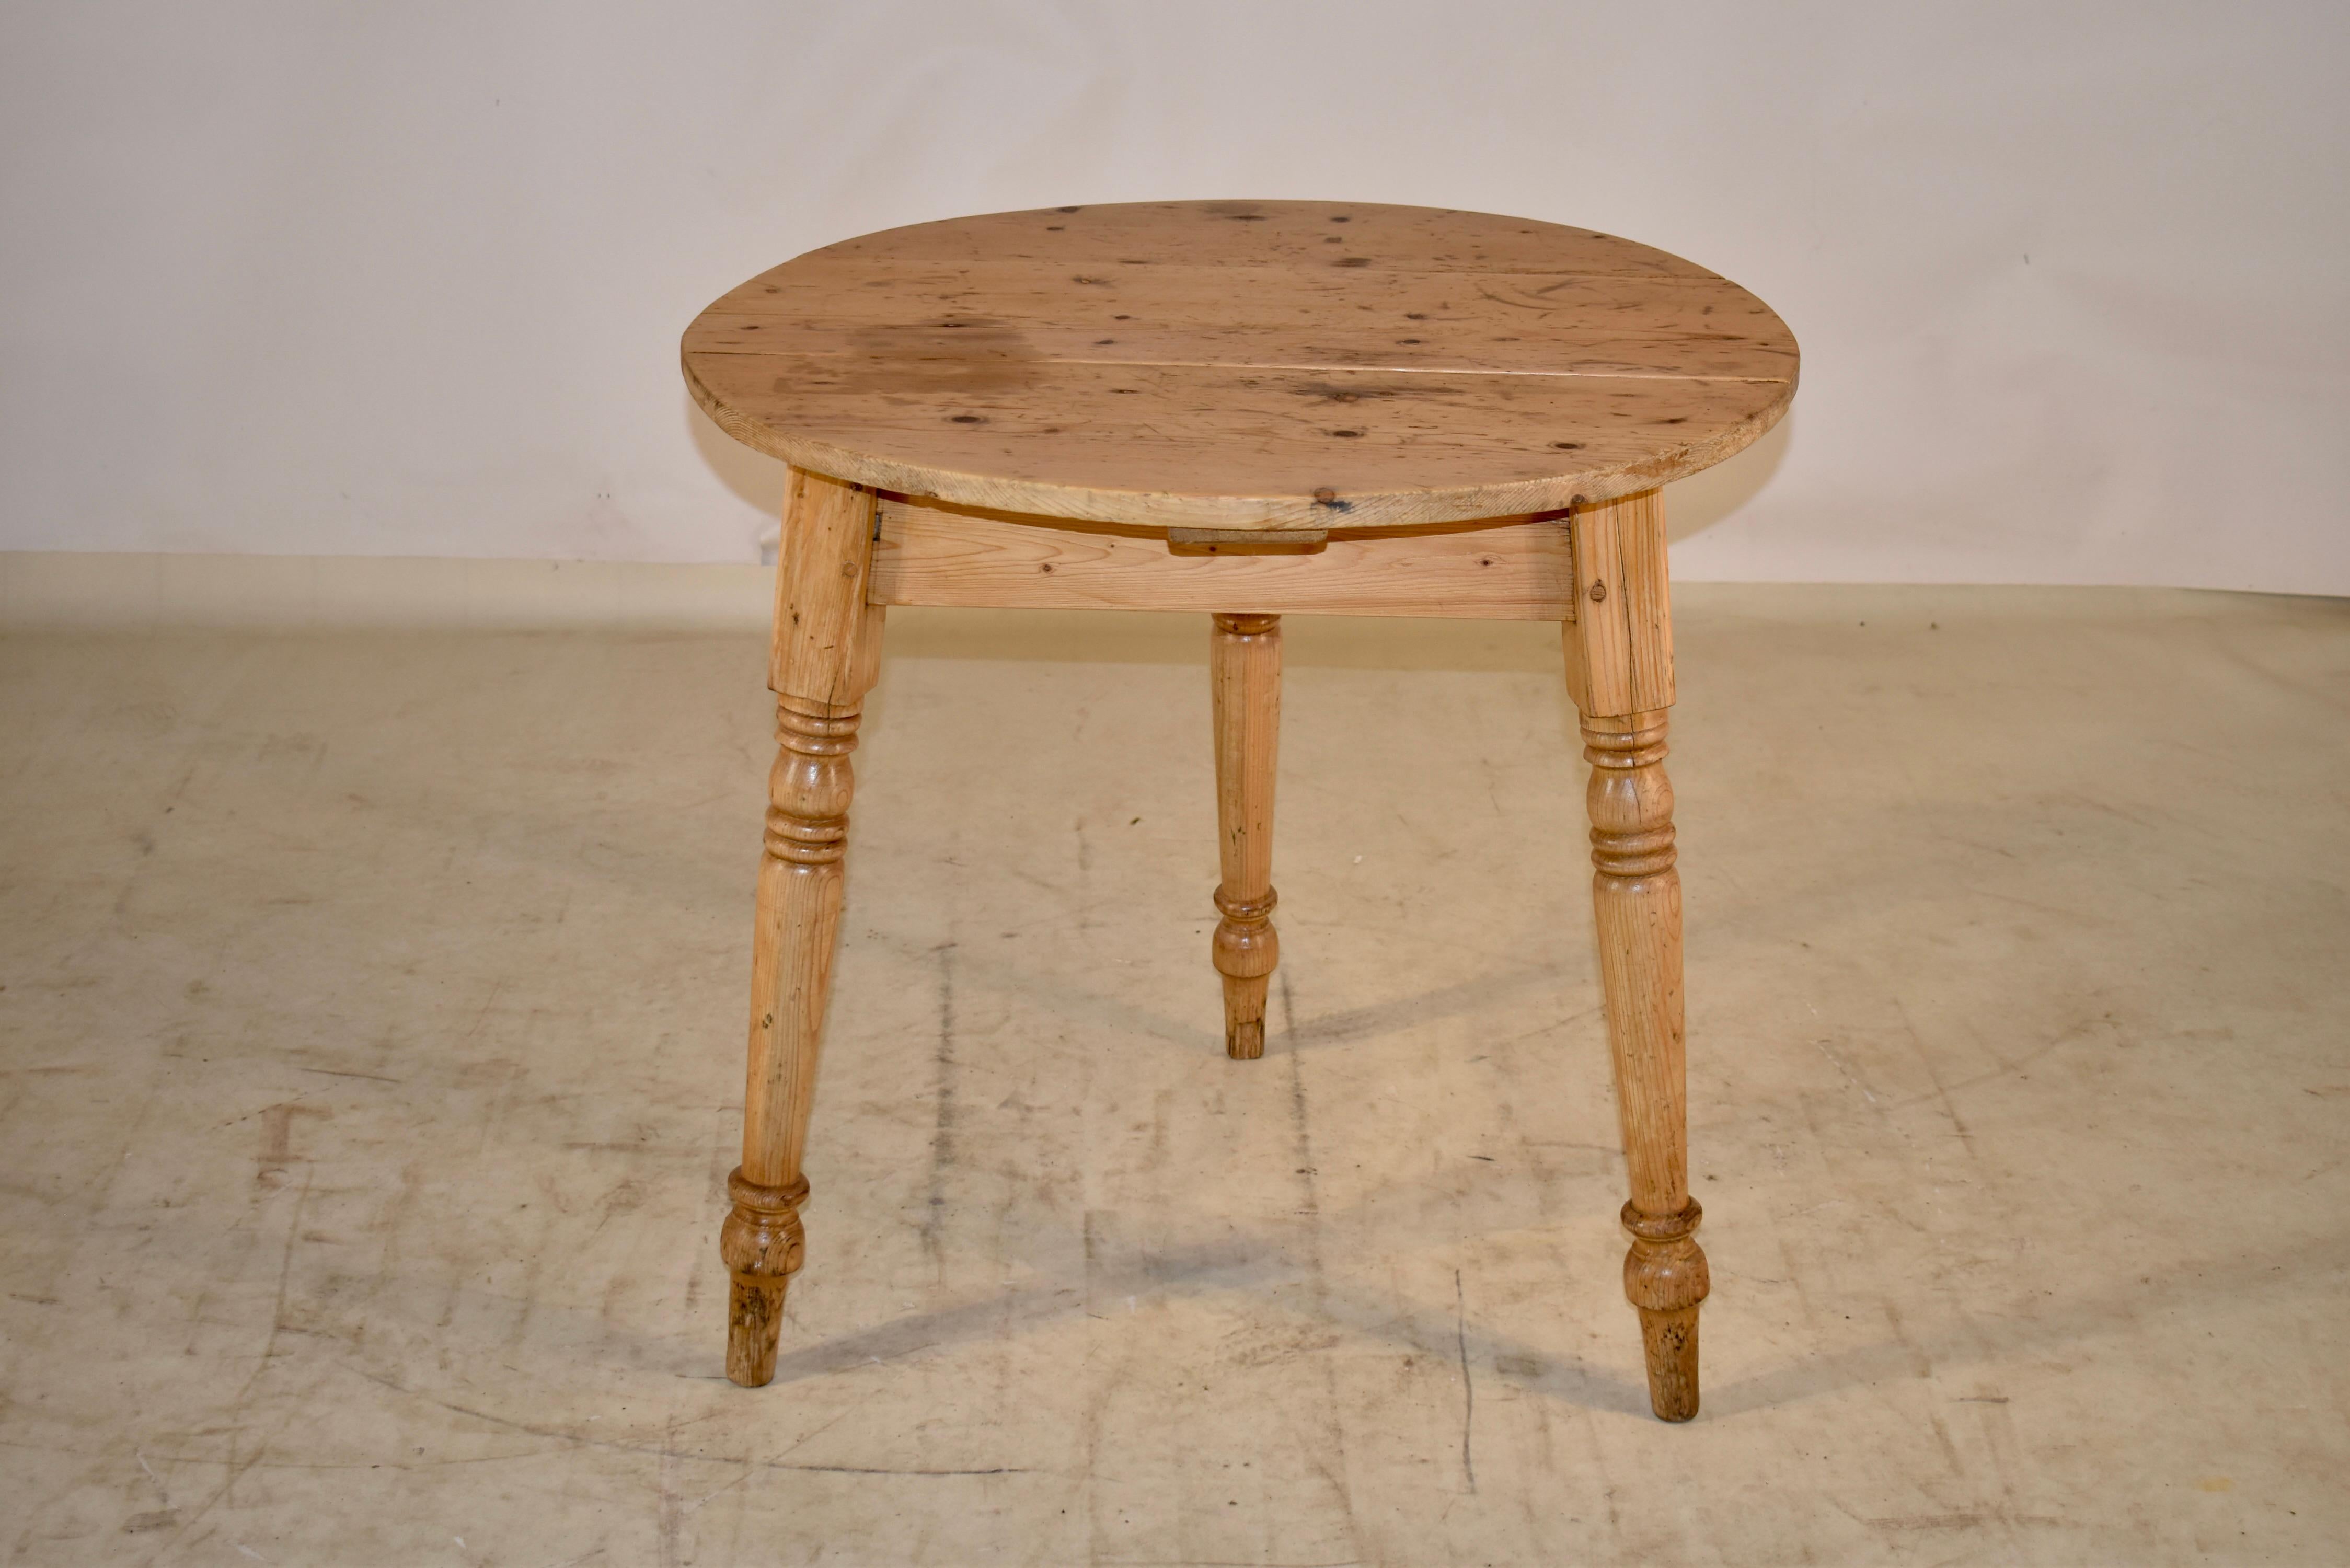 Kricket-Tisch aus Kiefernholz aus dem 19. Jahrhundert in England.  Die Platte ist aus Brettern gefertigt und hat eine Zapfenkonstruktion.  Die Platte stützt sich auf eine einfache Schürze und gespreizte Beine, die von Hand gedrechselt wurden. Die